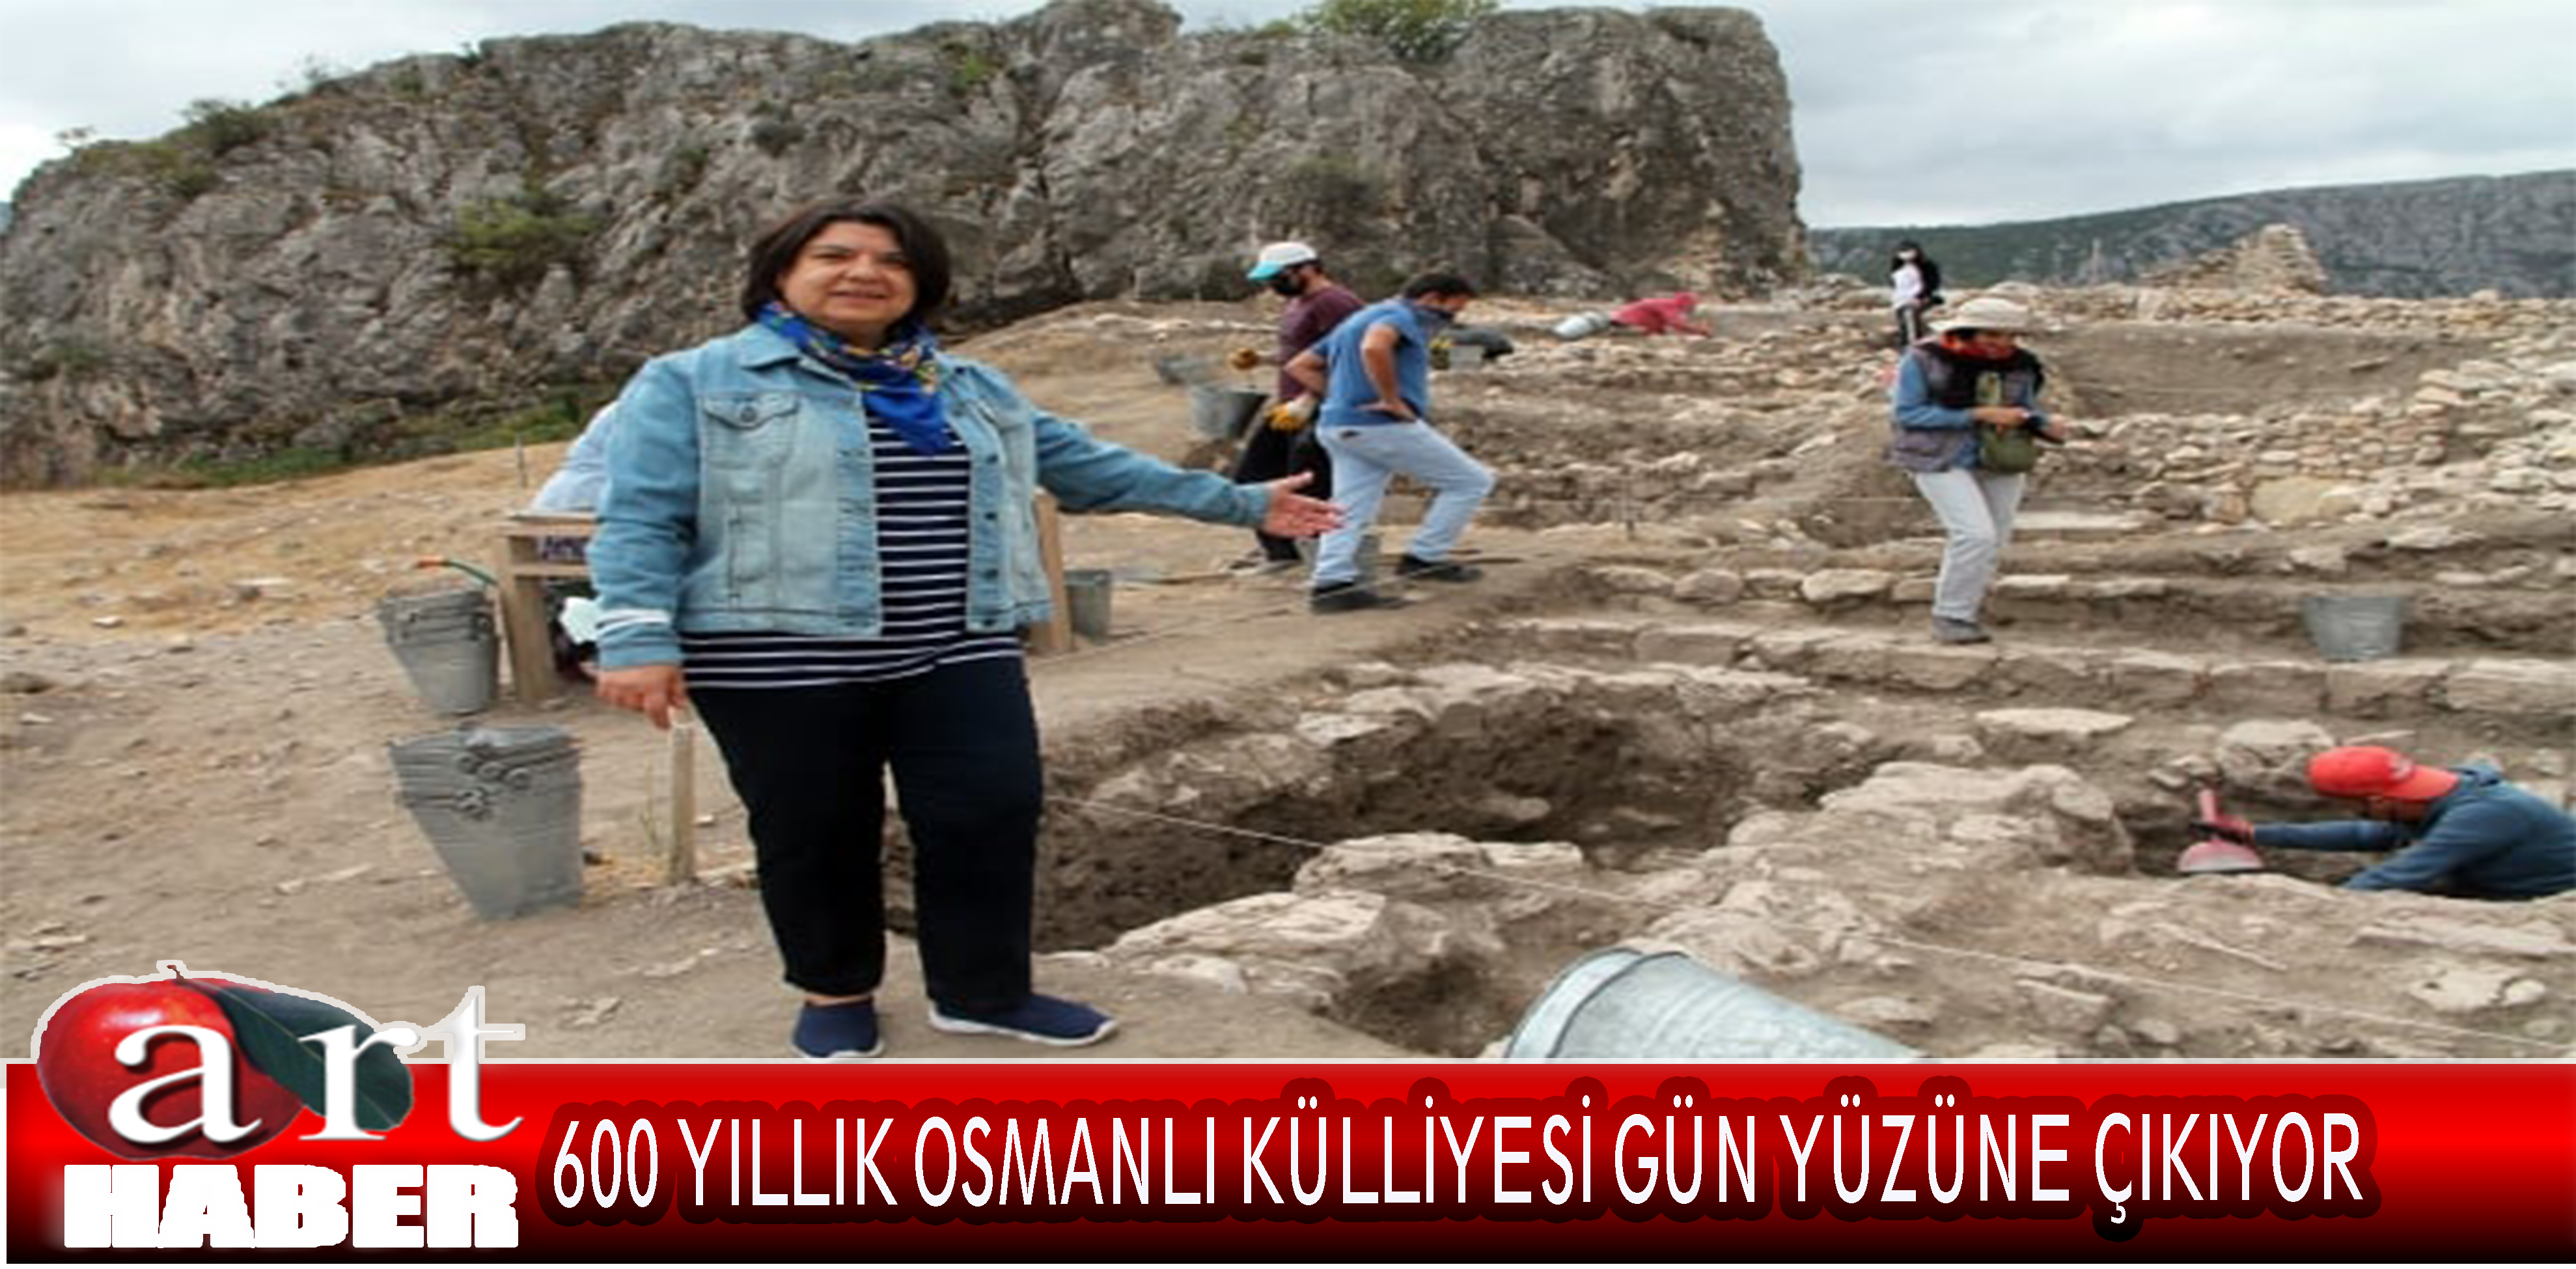 Amasya Harşena Kalesi ve Kızlar Sarayında bu yıl 4 Ağustosta başlayan kazılar sonucu 600 yıllık Osmanlı Külliyesi gün yüzüne çıkarılıyor.